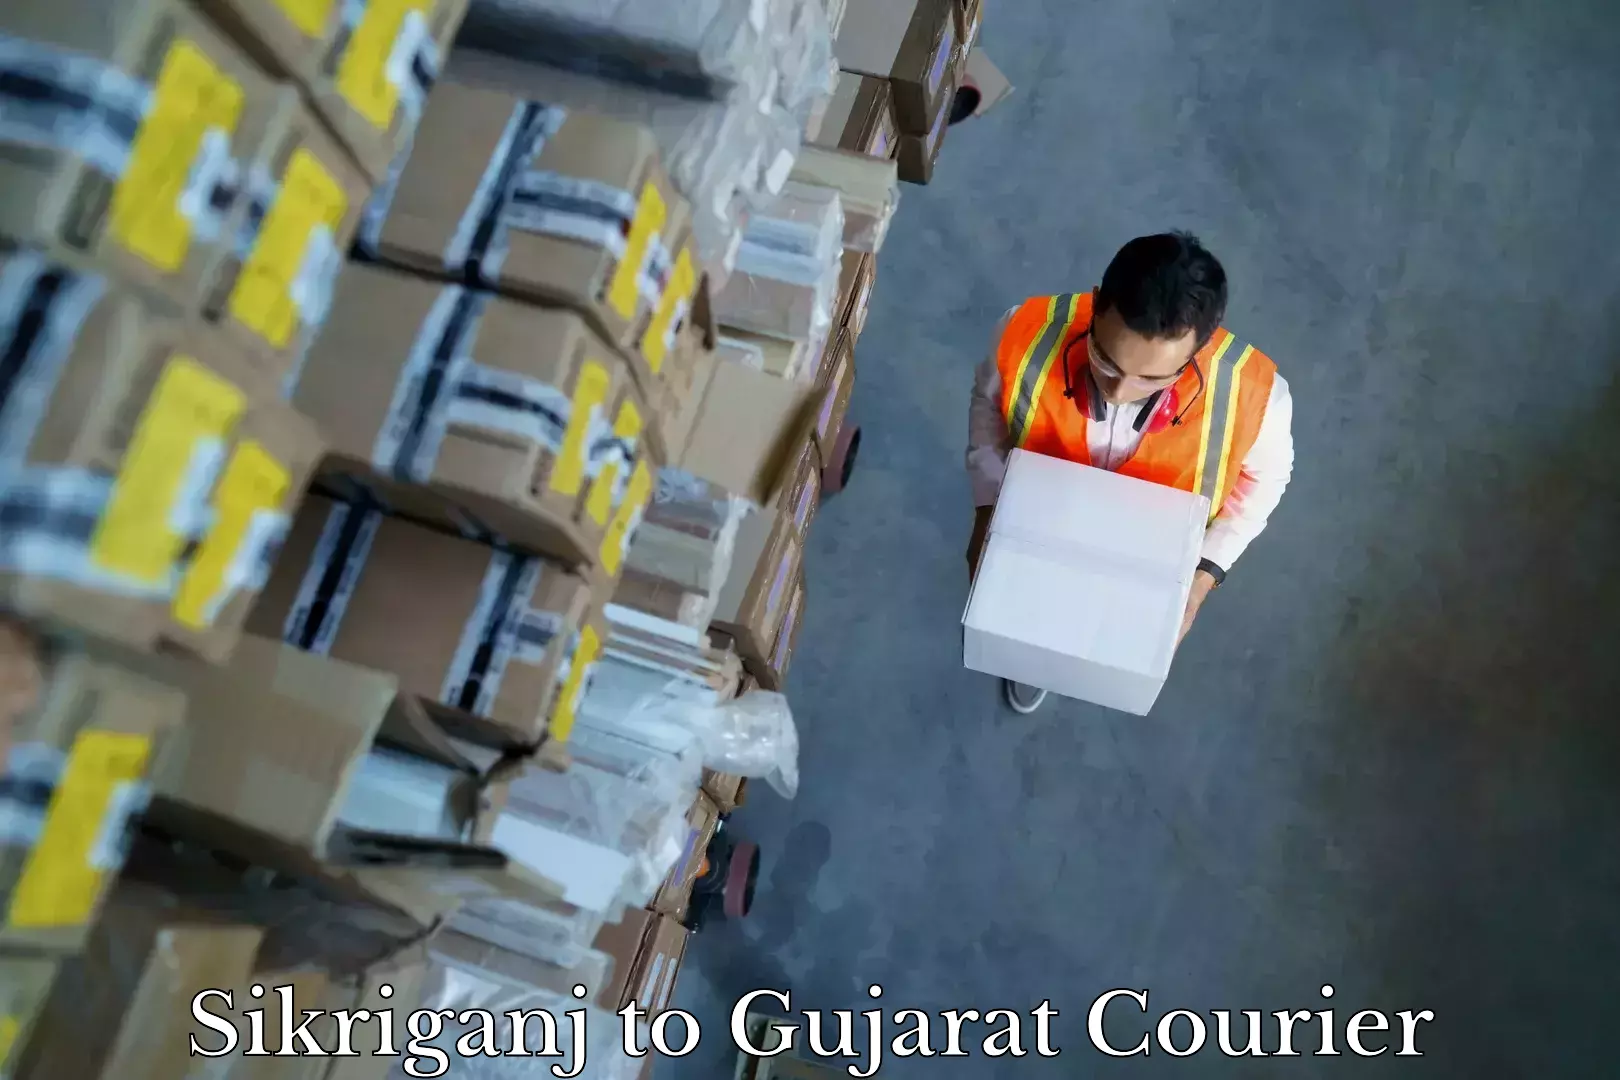 Professional furniture transport Sikriganj to Patan Gujarat